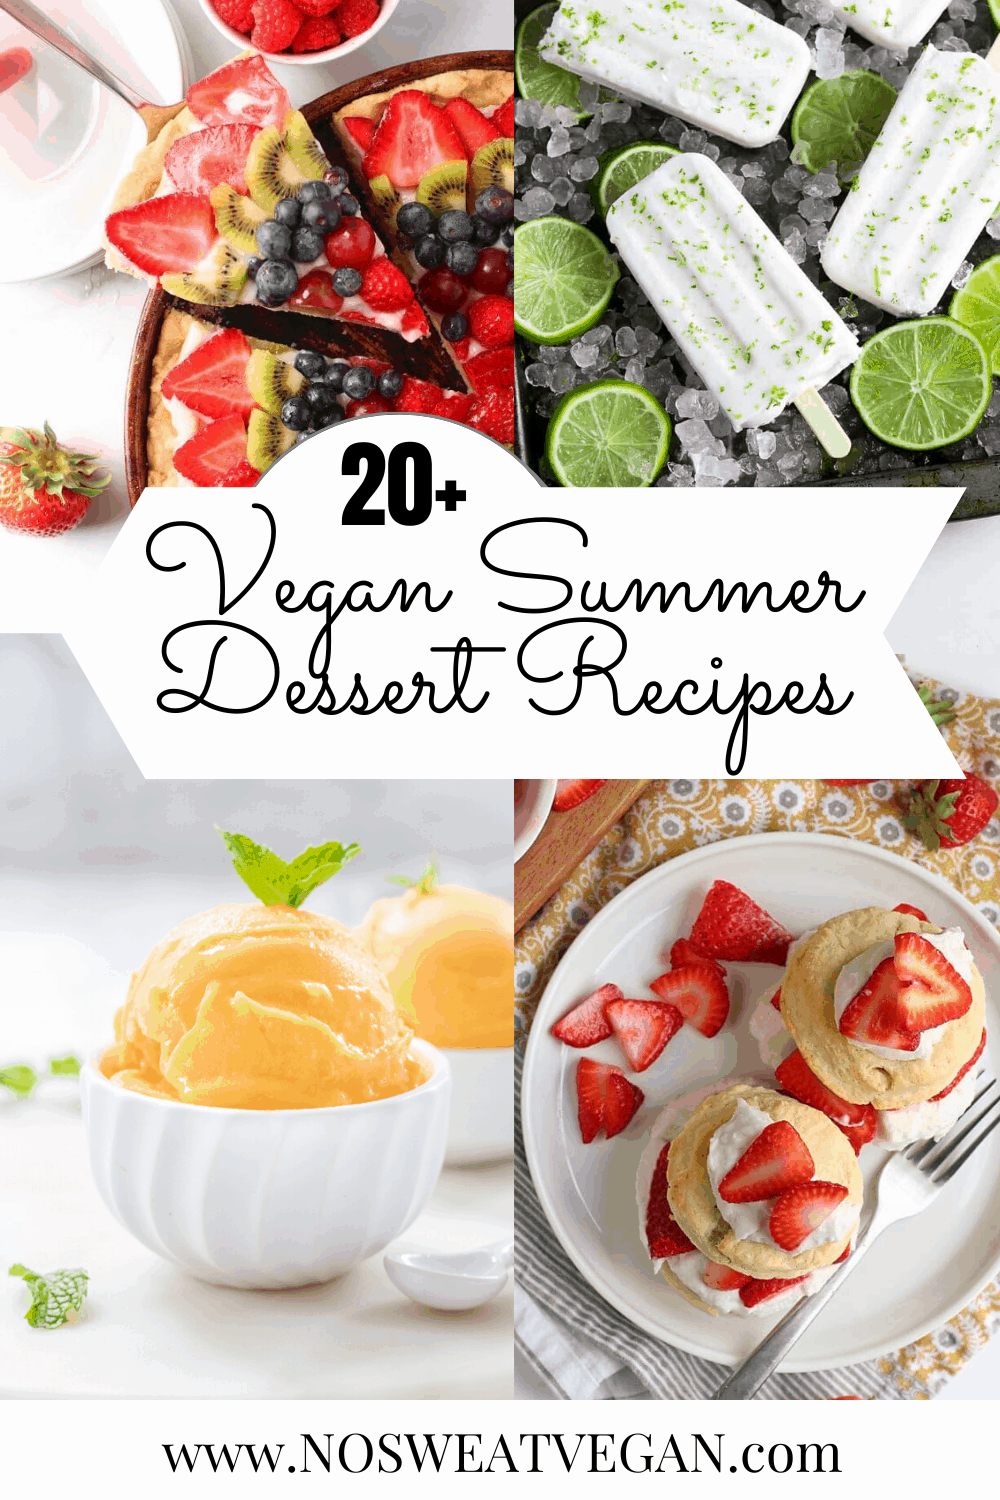 Vegan summer dessert recipes pin.